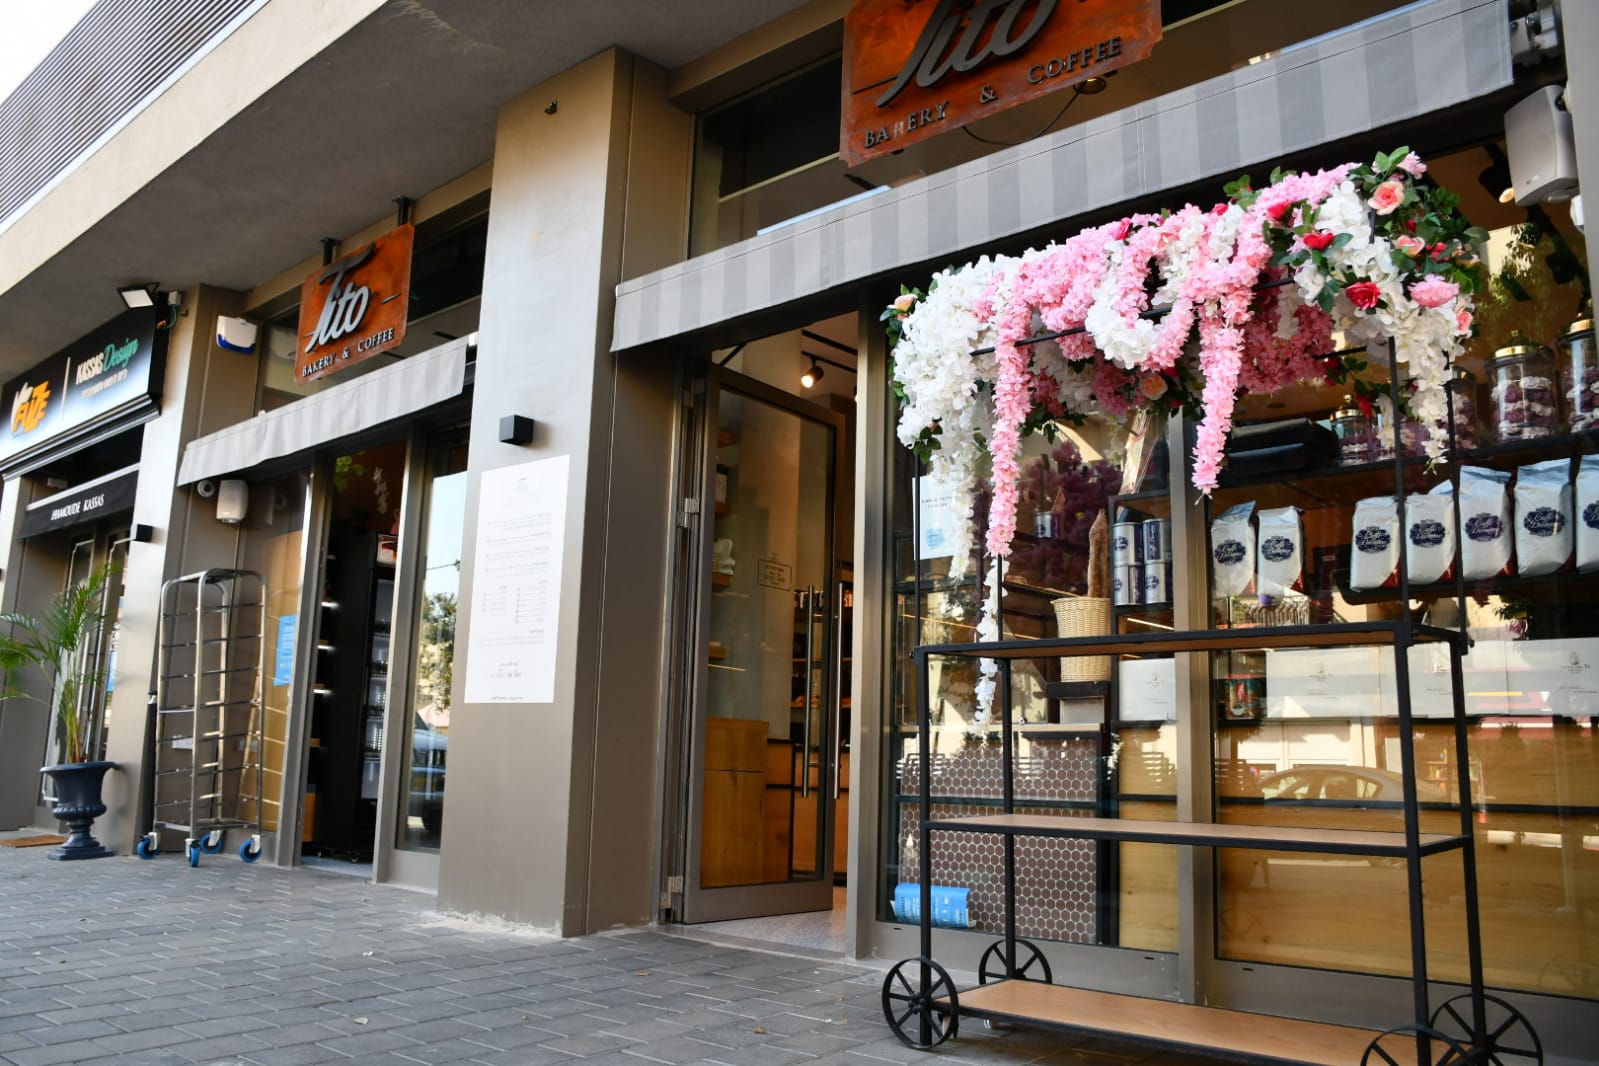 اليوم: مقهى تيتو بيافا يفتح أبوابه مع مفاجآت جديدة